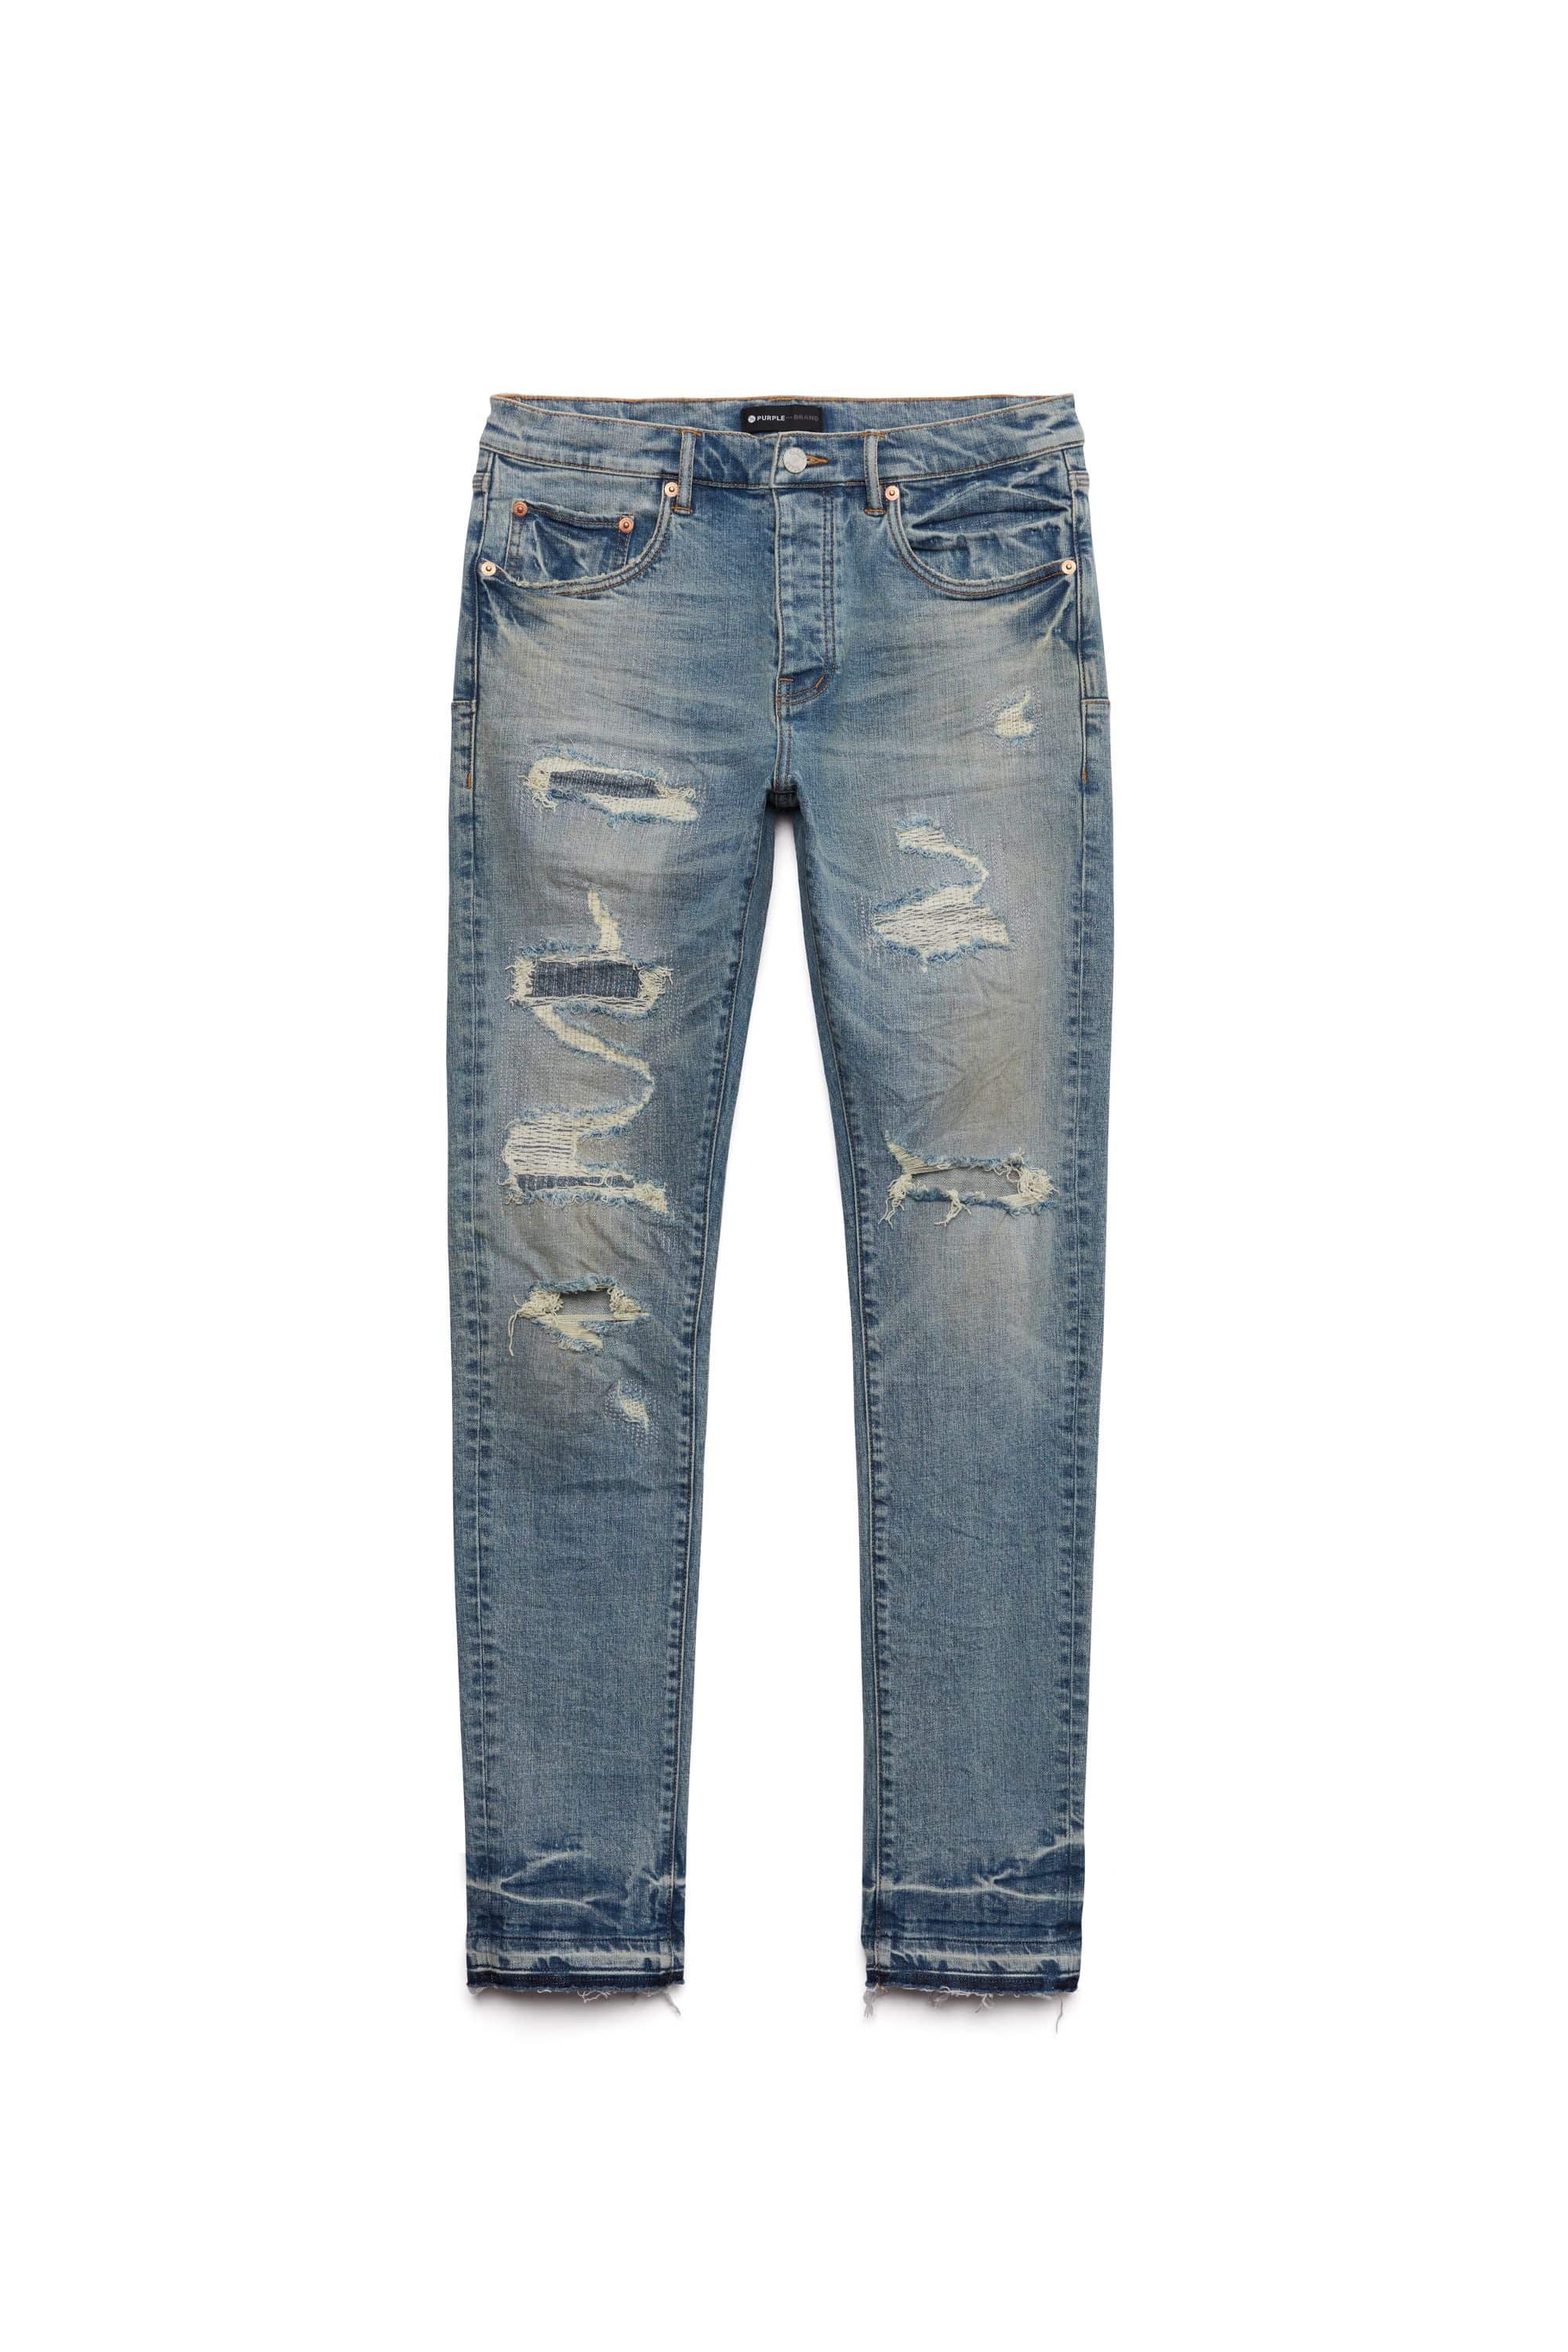 Purple Brand Jeans Mens Slim Fit Low Rise P001 Blue $295 Size 36